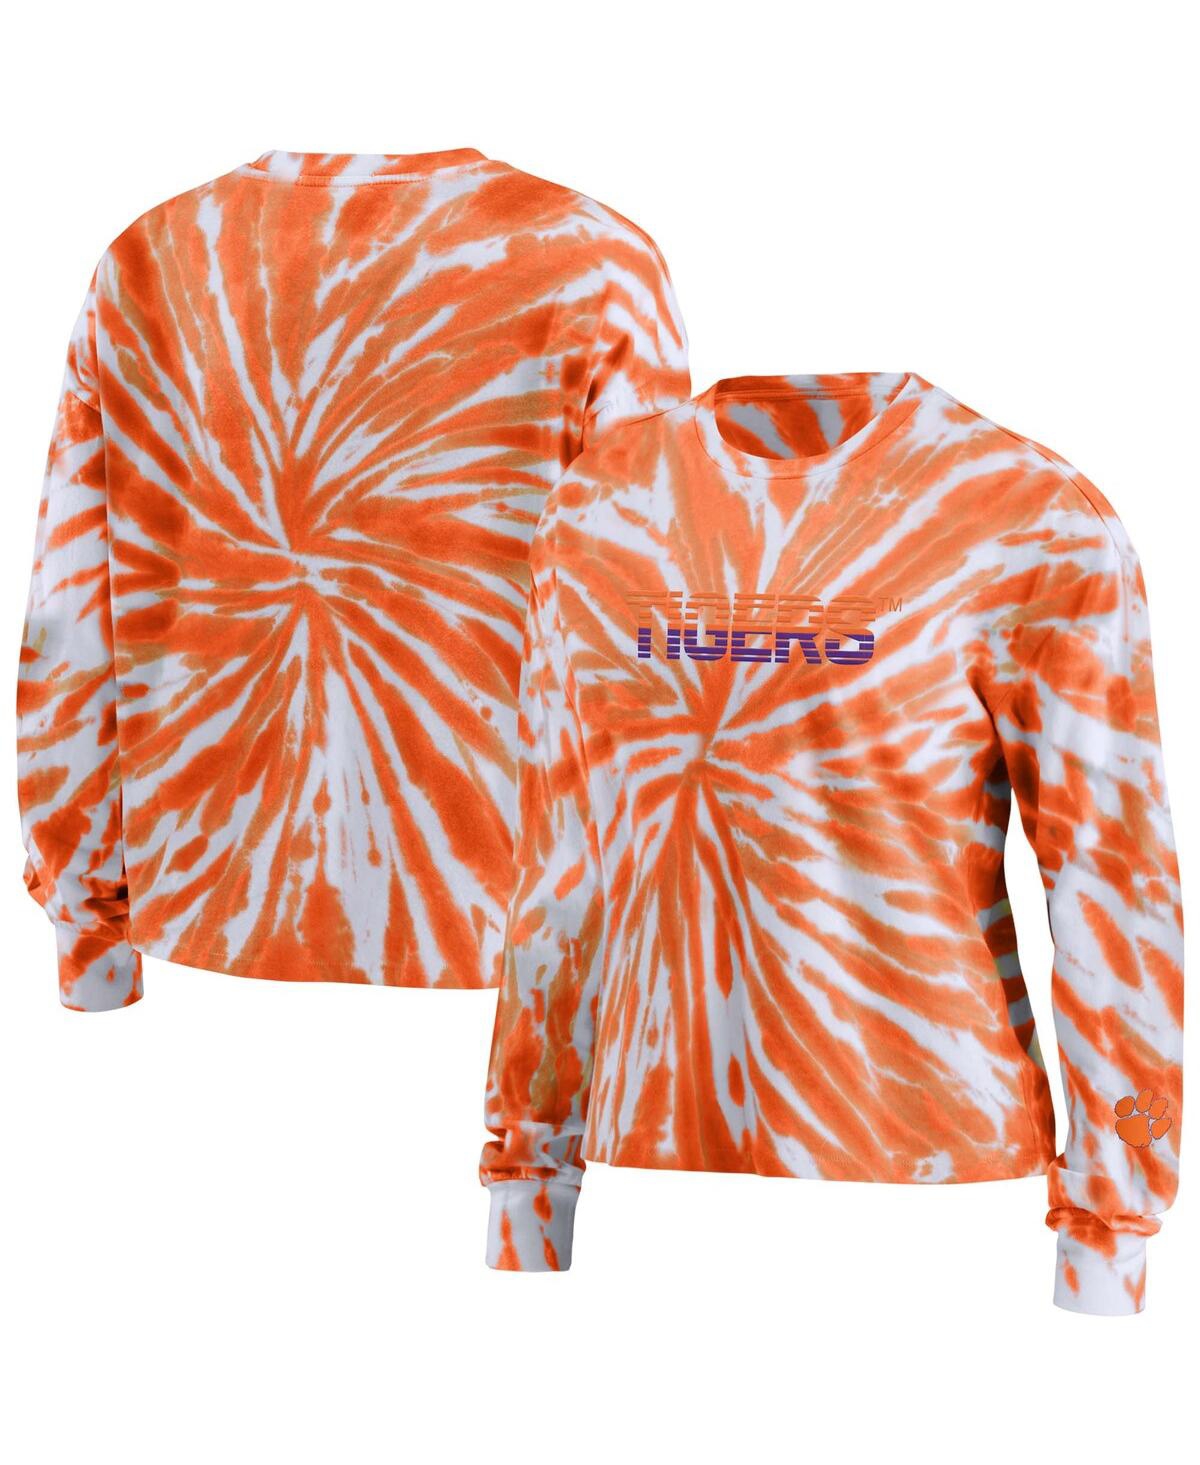 Shop Wear By Erin Andrews Women's  Orange Clemson Tigers Tie-dye Long Sleeve T-shirt